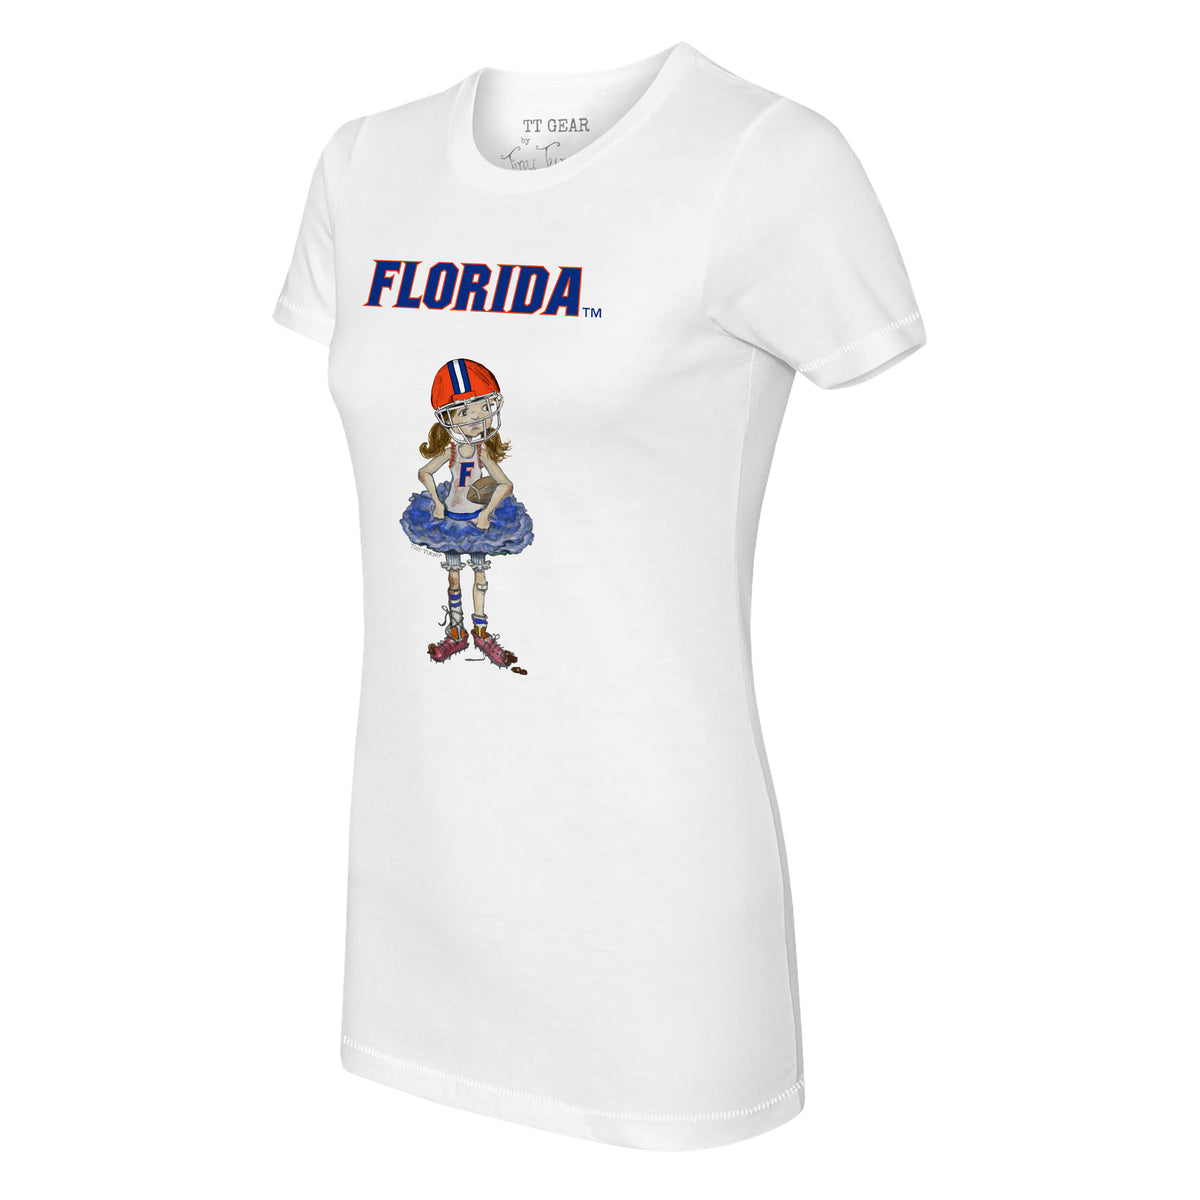 Florida Gators Babes Tee Shirt